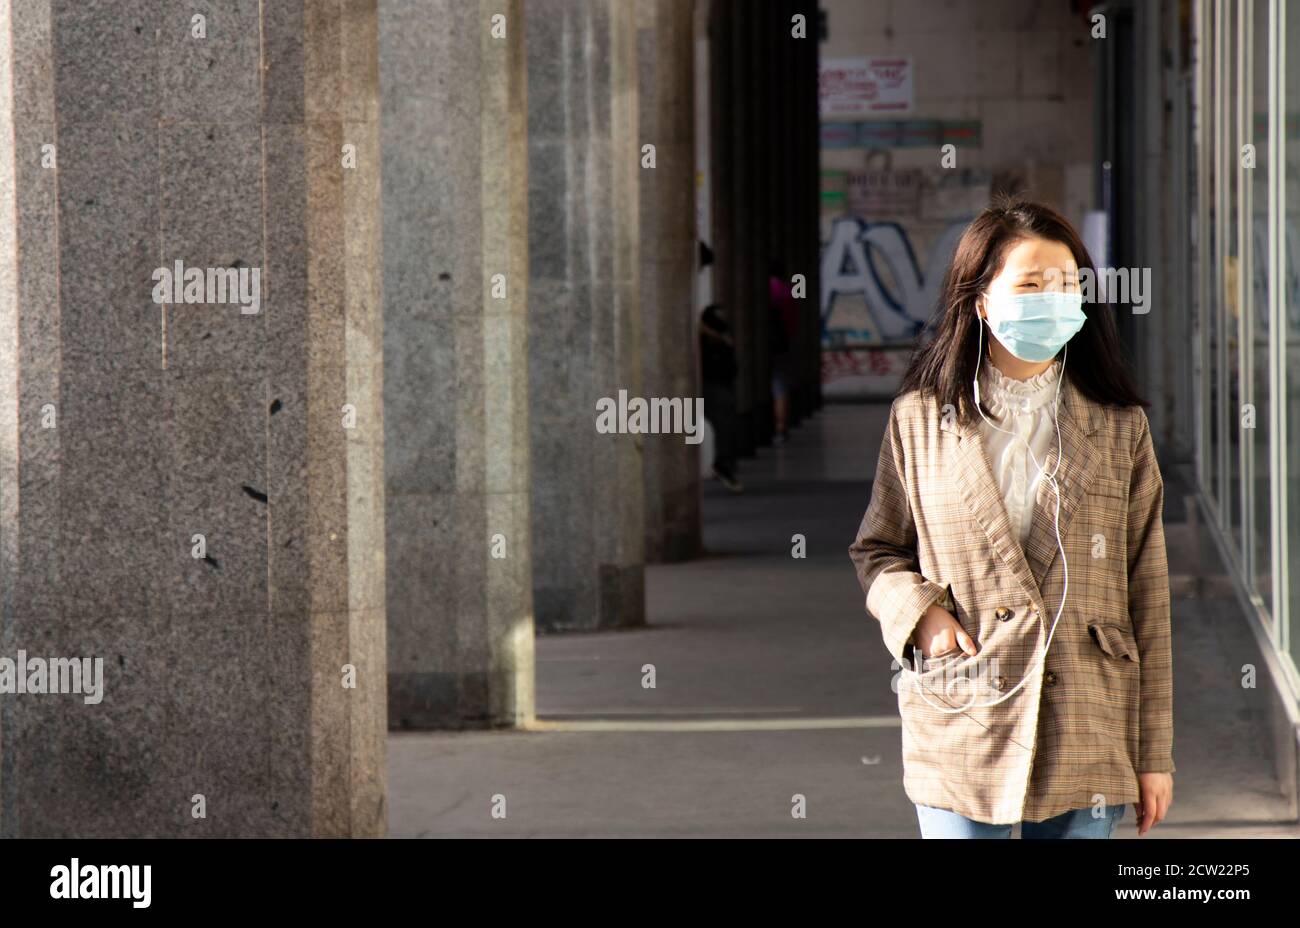 Belgrade, Serbie - 26 septembre 2020 : jeunes femmes asiatiques portant un masque chirurgical et des écouteurs marchant dans la rue avec une main dans une poche Banque D'Images